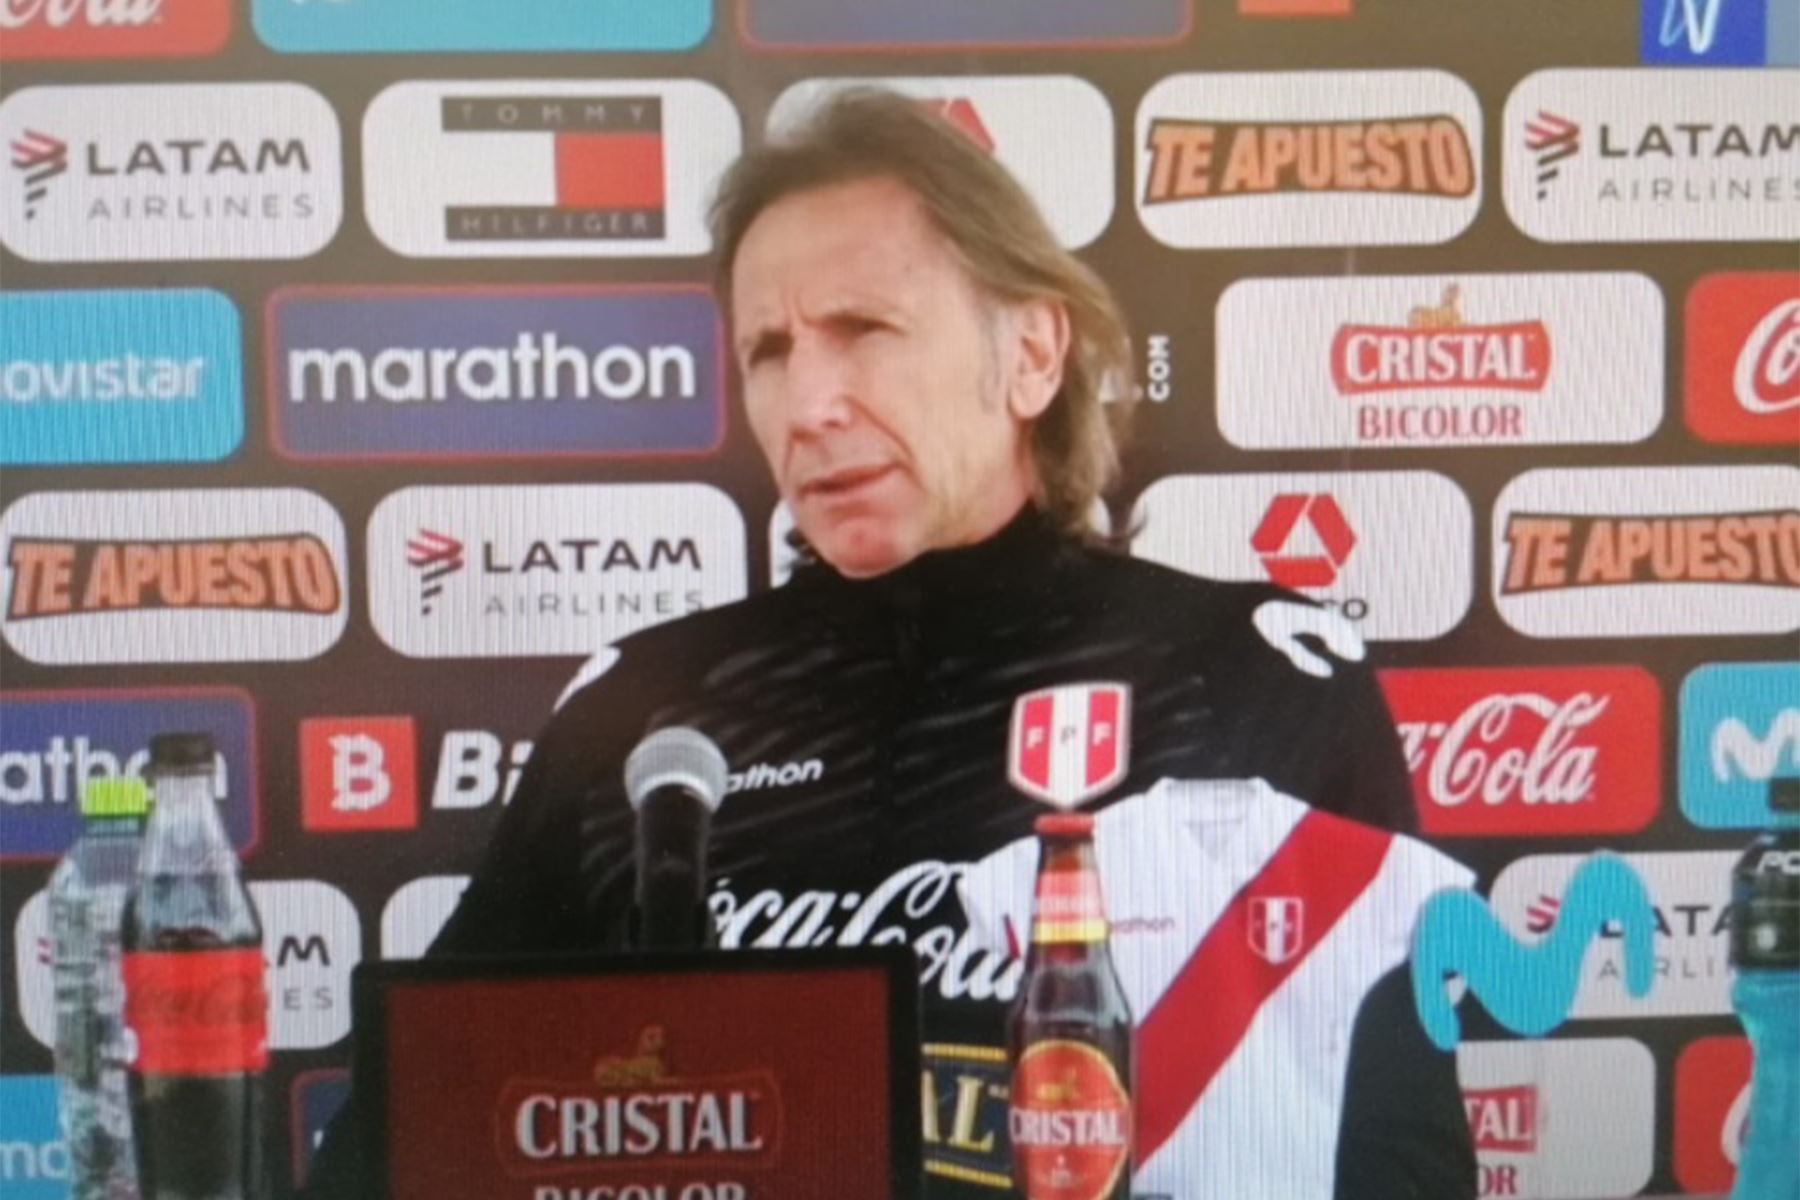 El entrenador Ricardo Gareca confía en que la selección peruana sacará buenos resultados en esta fecha triple. Foto: Captura TV